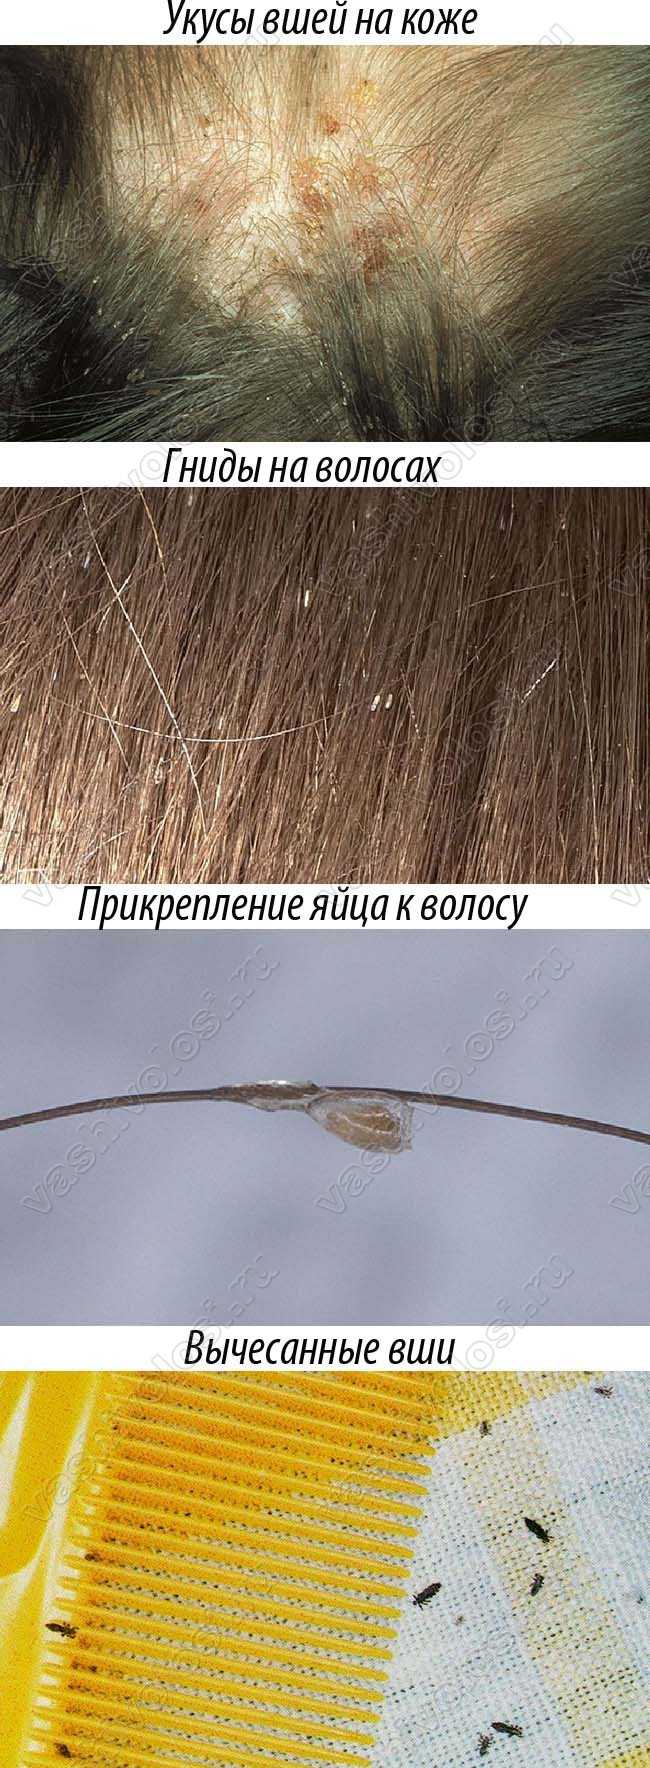 Как Выглядят Вши На Волосах Фото